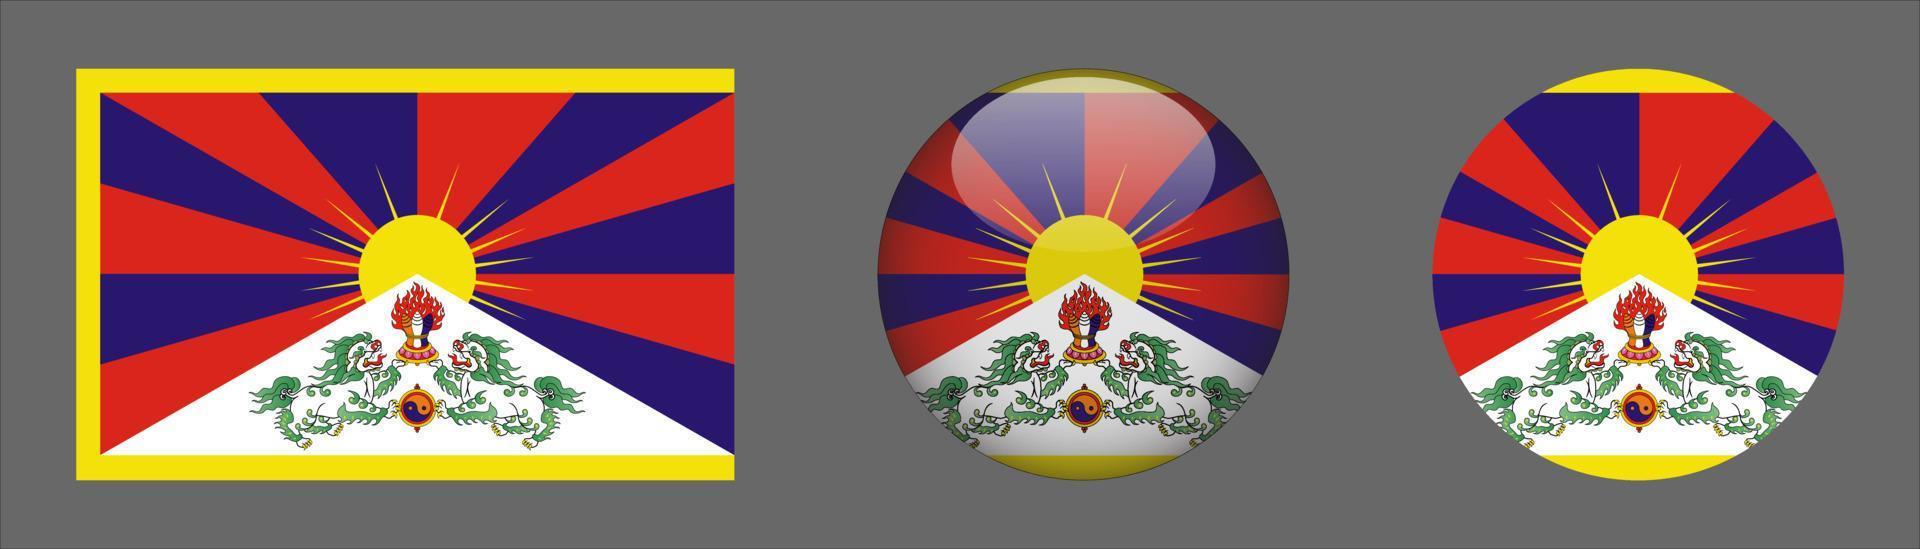 Tibetaanse vlagsetcollectie, originele maatverhouding, 3d afgerond en plat afgerond. vector